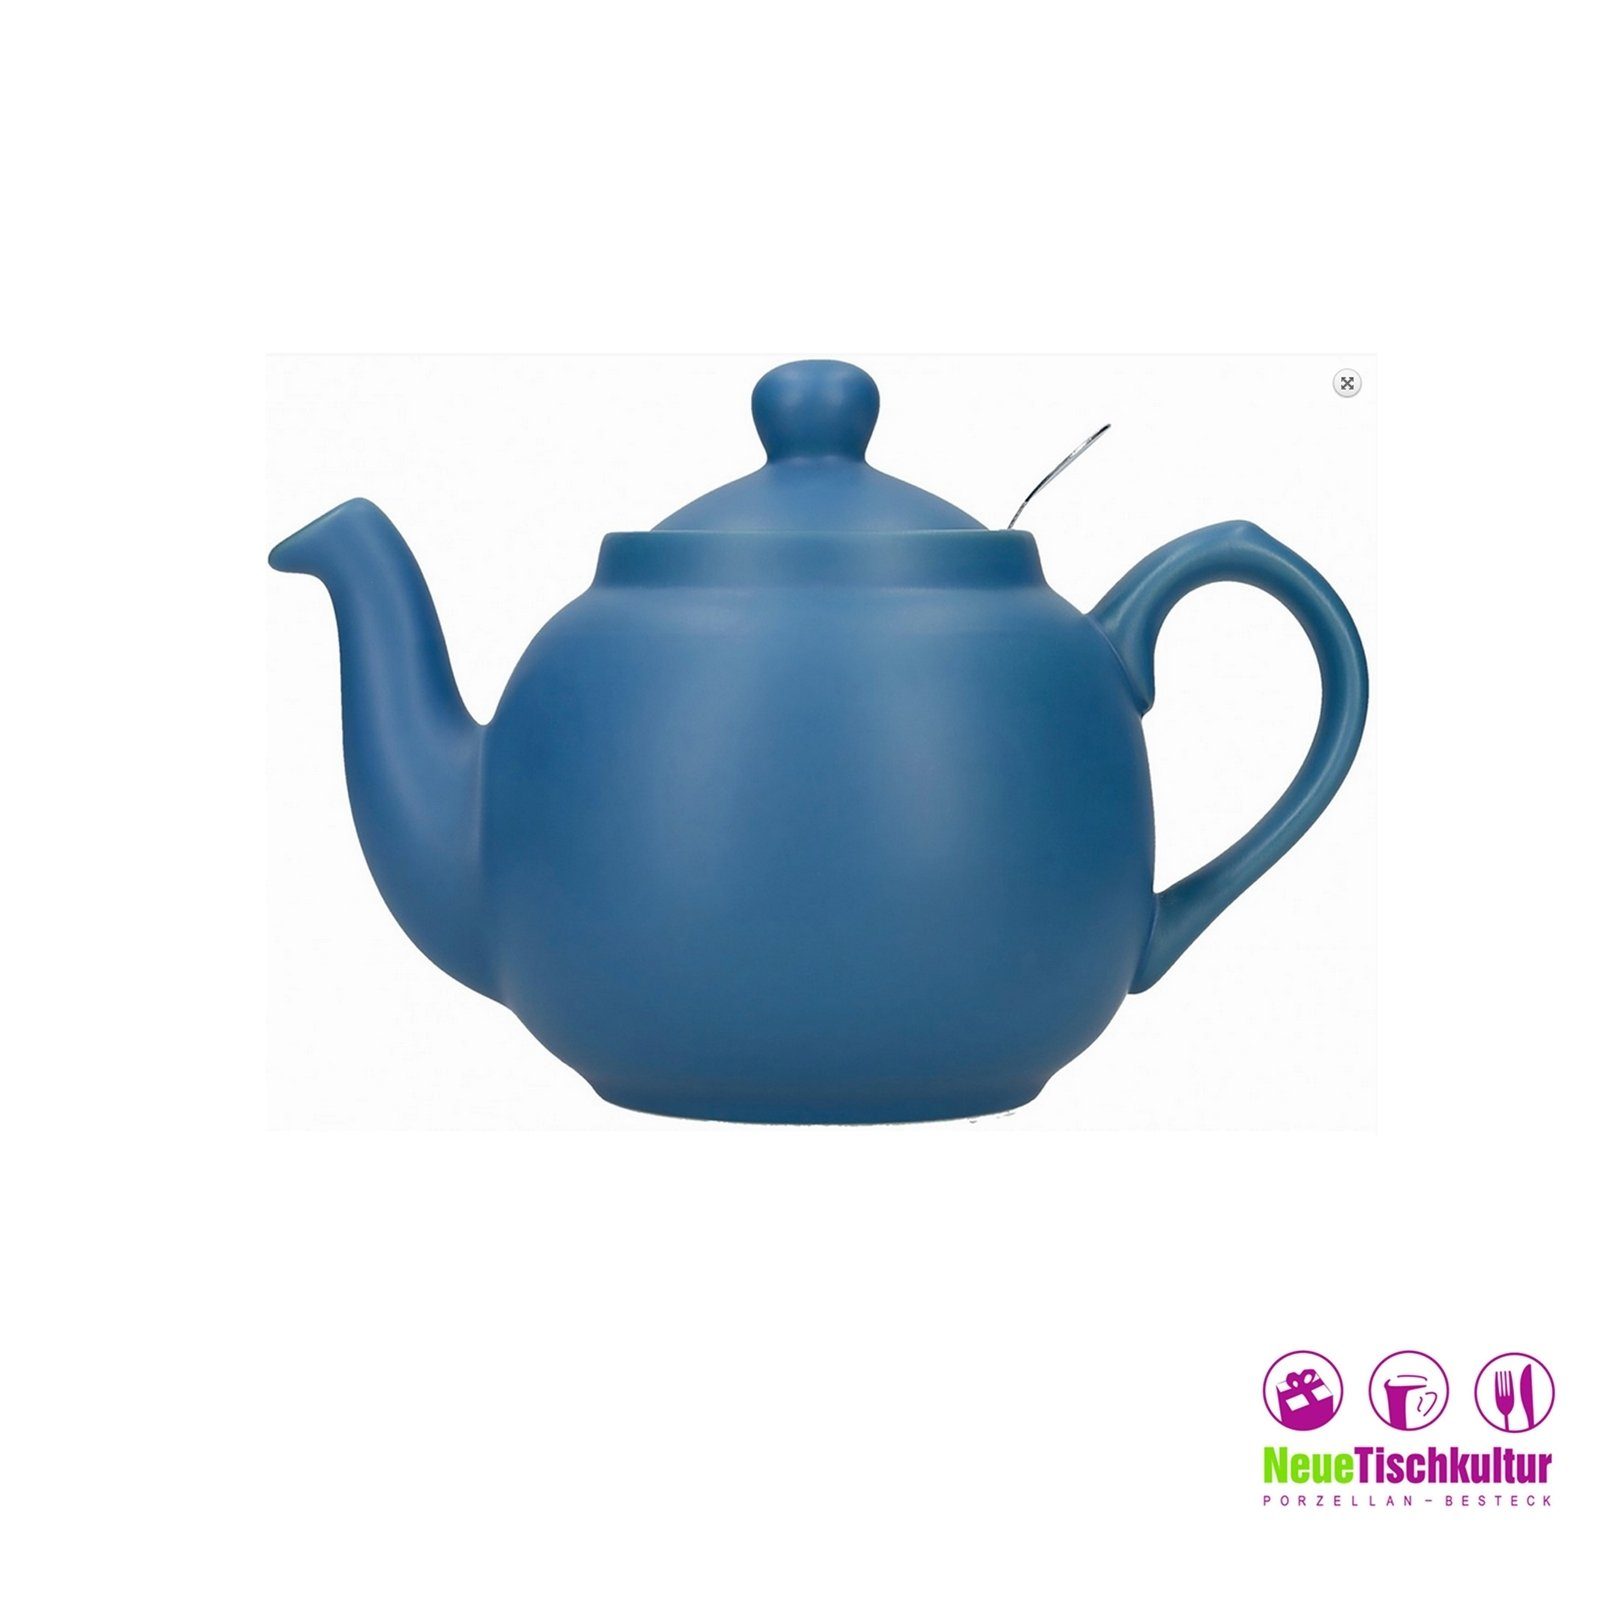 Neuetischkultur Teekanne Teekanne, Keramik/Edelstahlsieb, für Nordisch Blau Tassen, 6 1.5 l